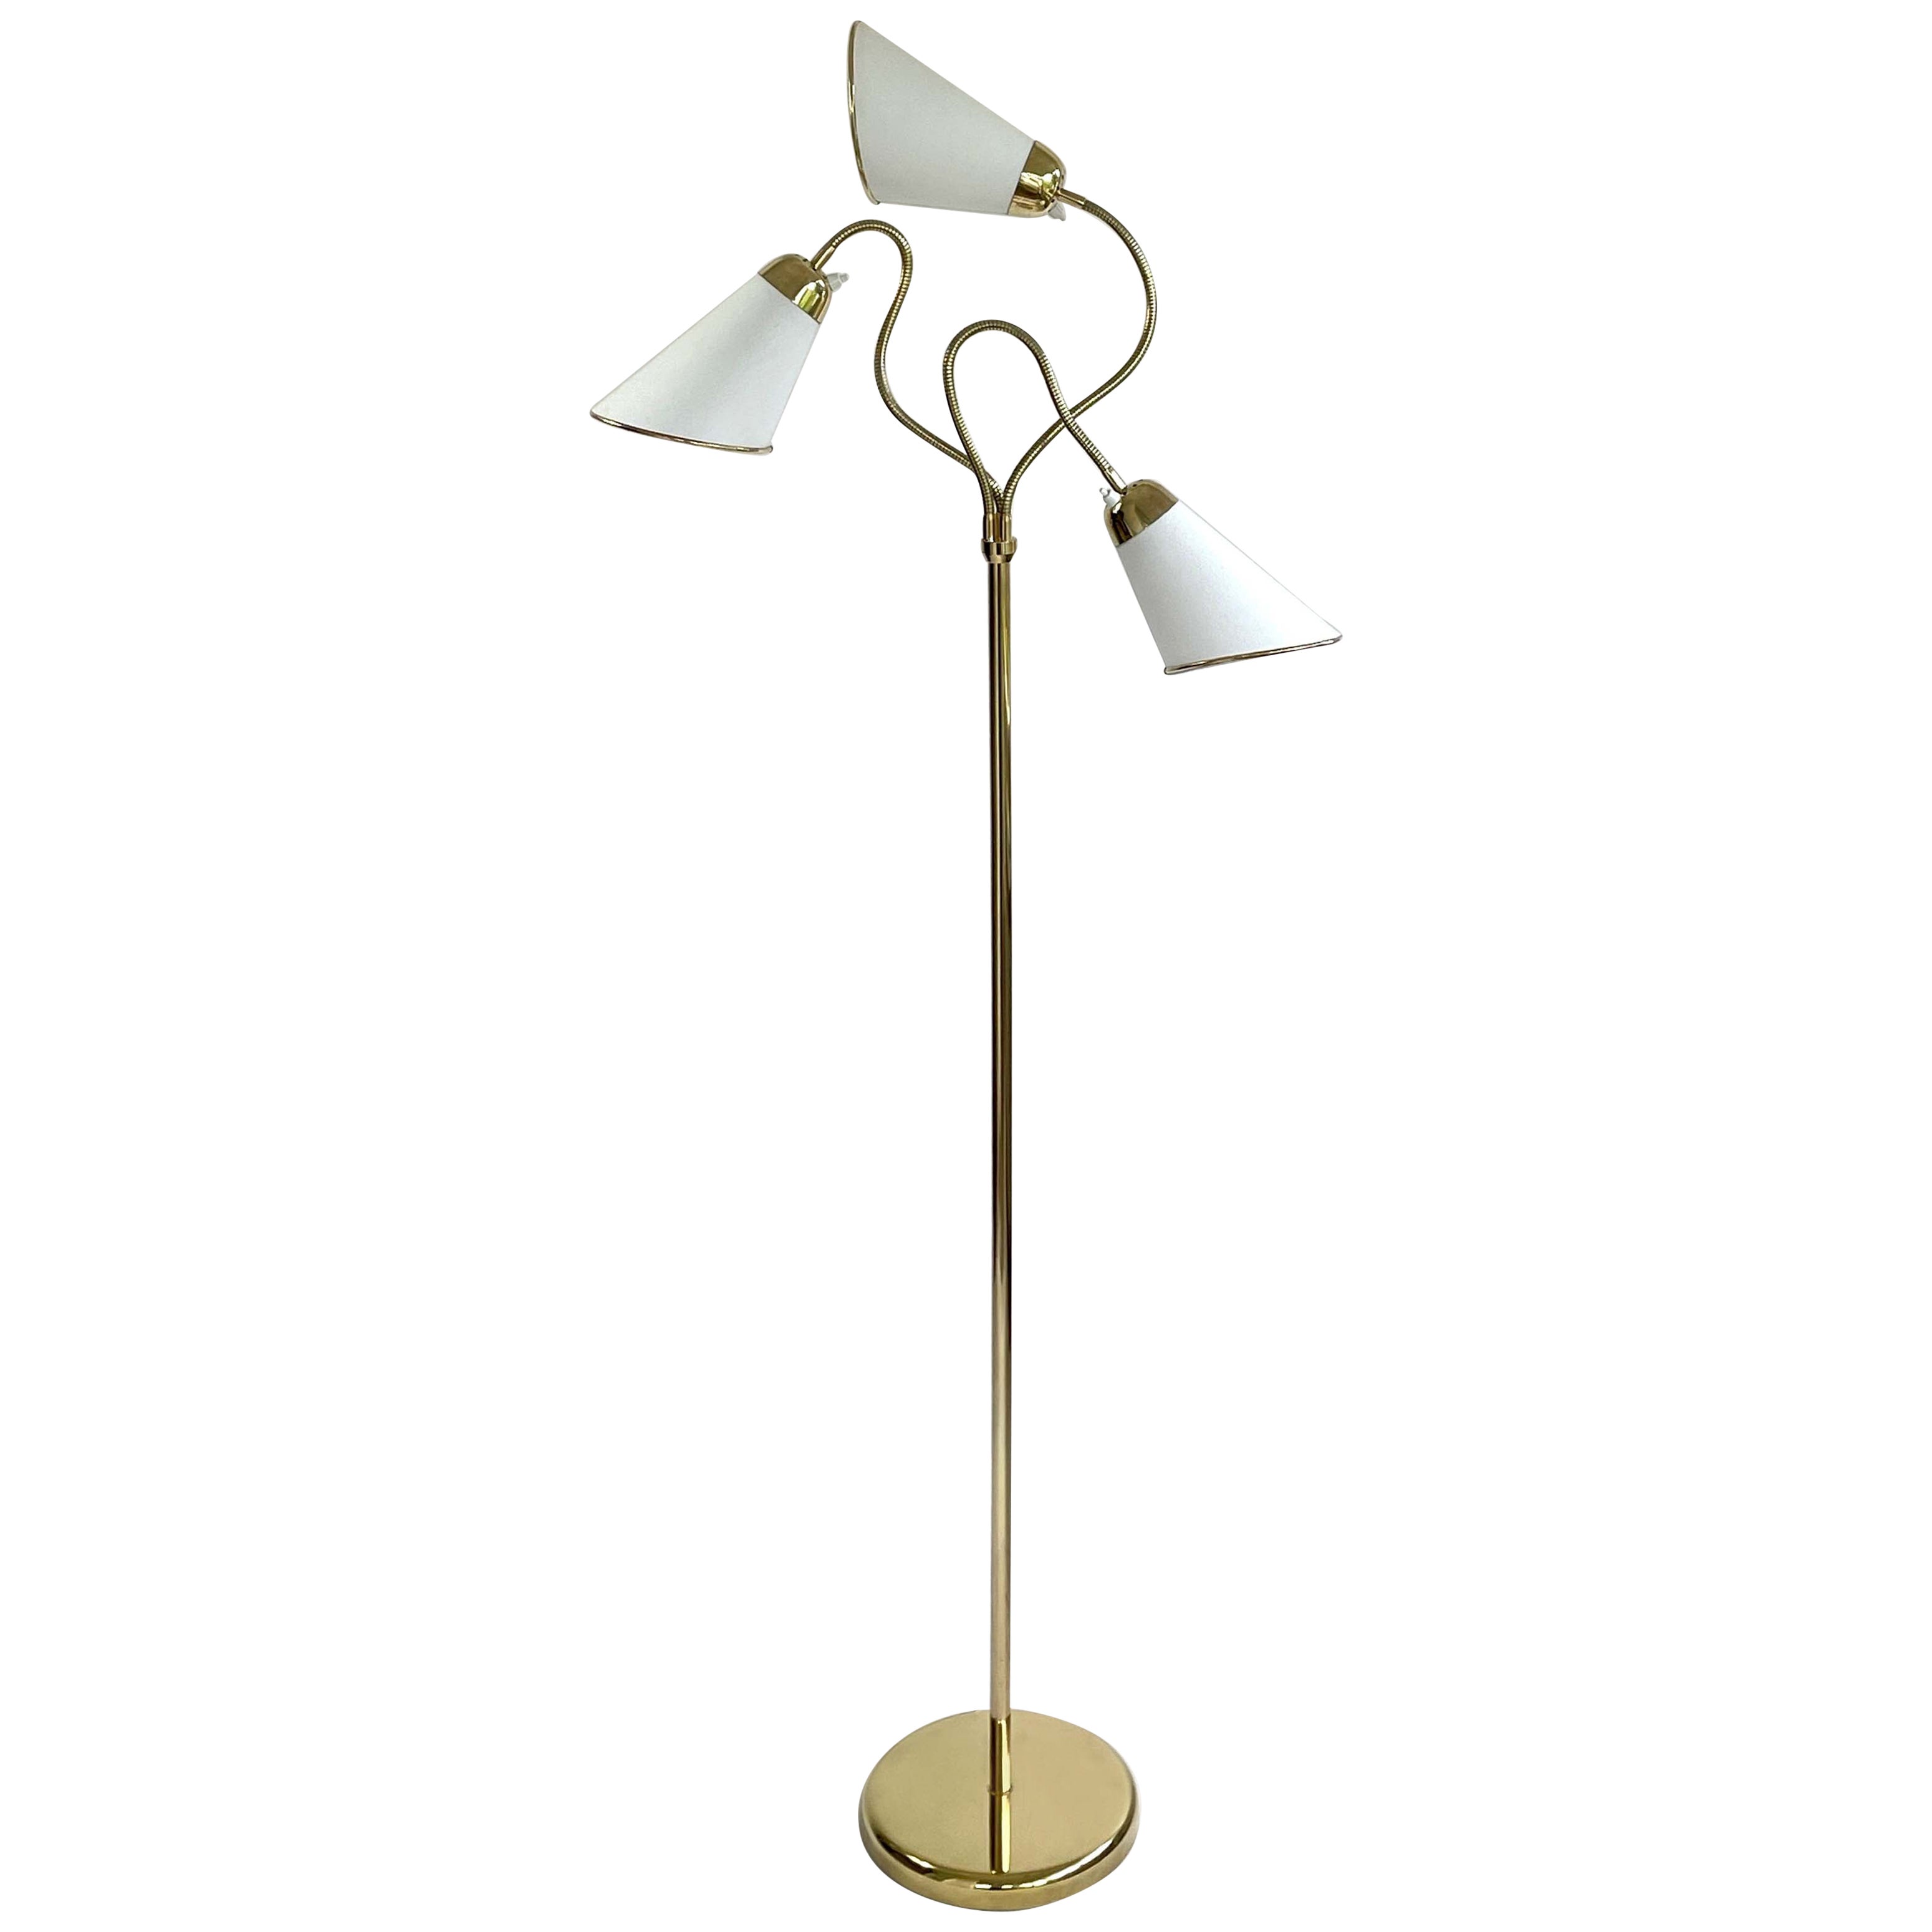 Triple Gooseneck Brass & Off White Fabric Floor Lamp, Sweden 1950s For Sale